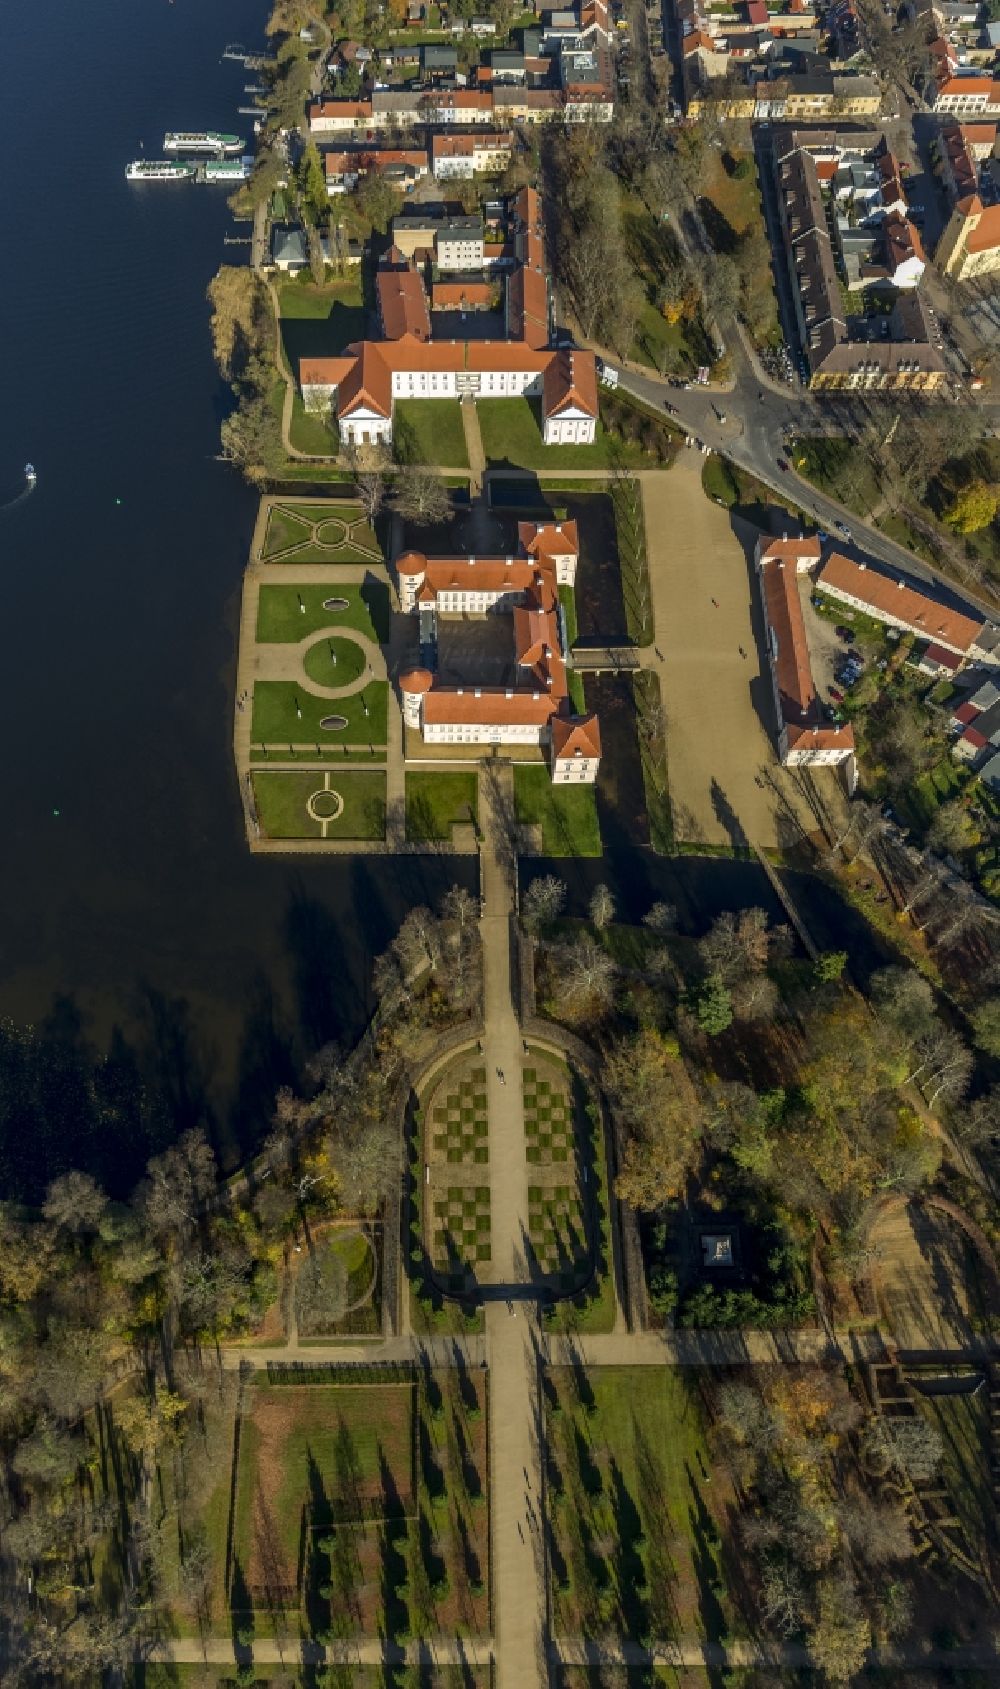 Rheinsberg aus der Vogelperspektive: Schloss Rheinsberg in der Stadt Rheinsberg am Grienericksee in Brandenburg